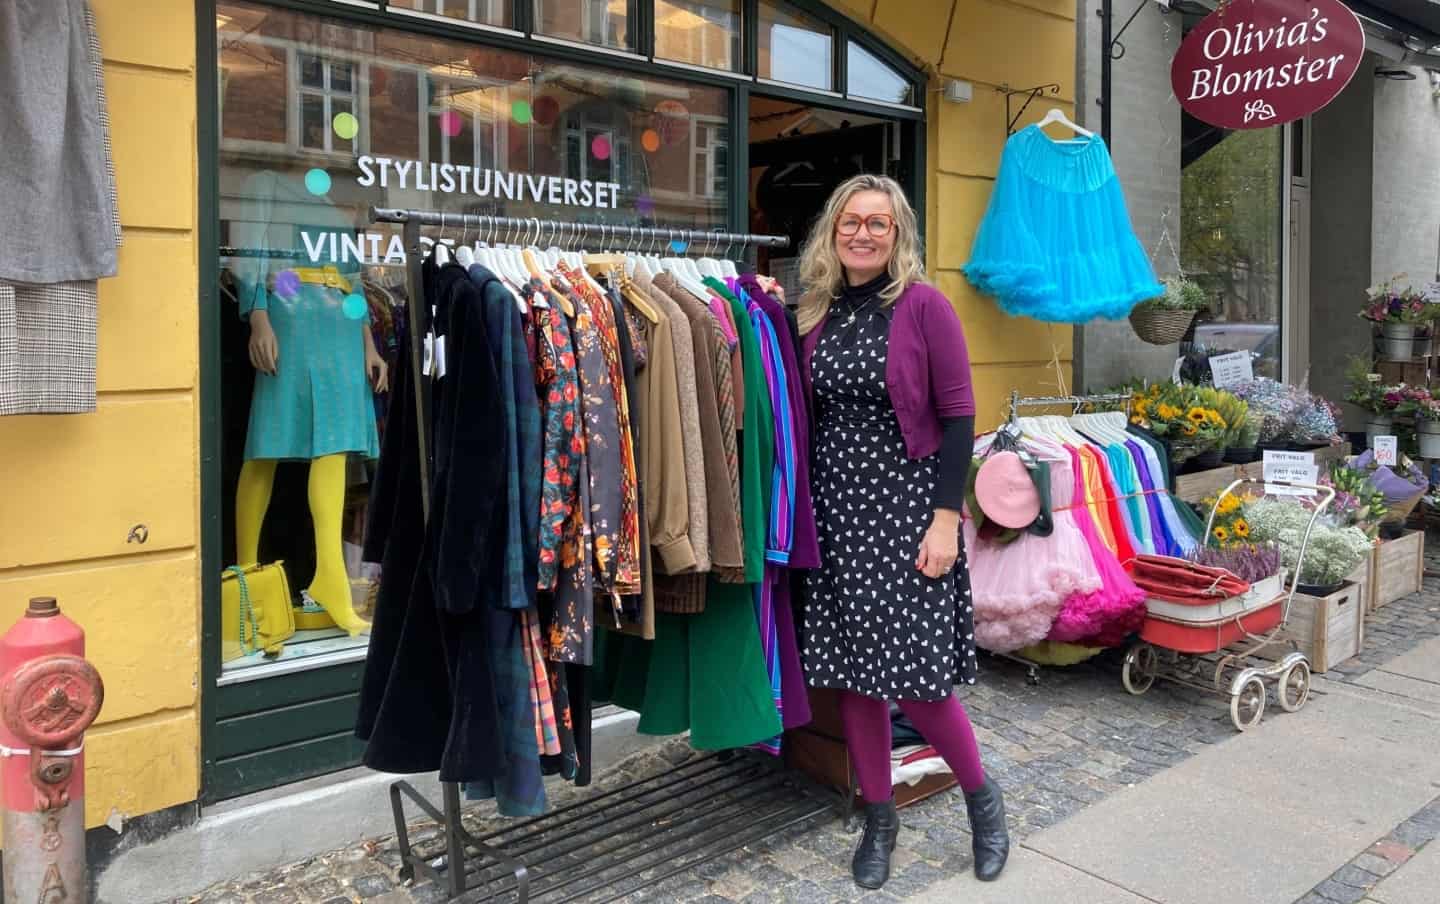 Pia må tage afsked med sin helt unikke butik: - Jeg orker ikke at have i maven hver længere | kobenhavnliv.dk